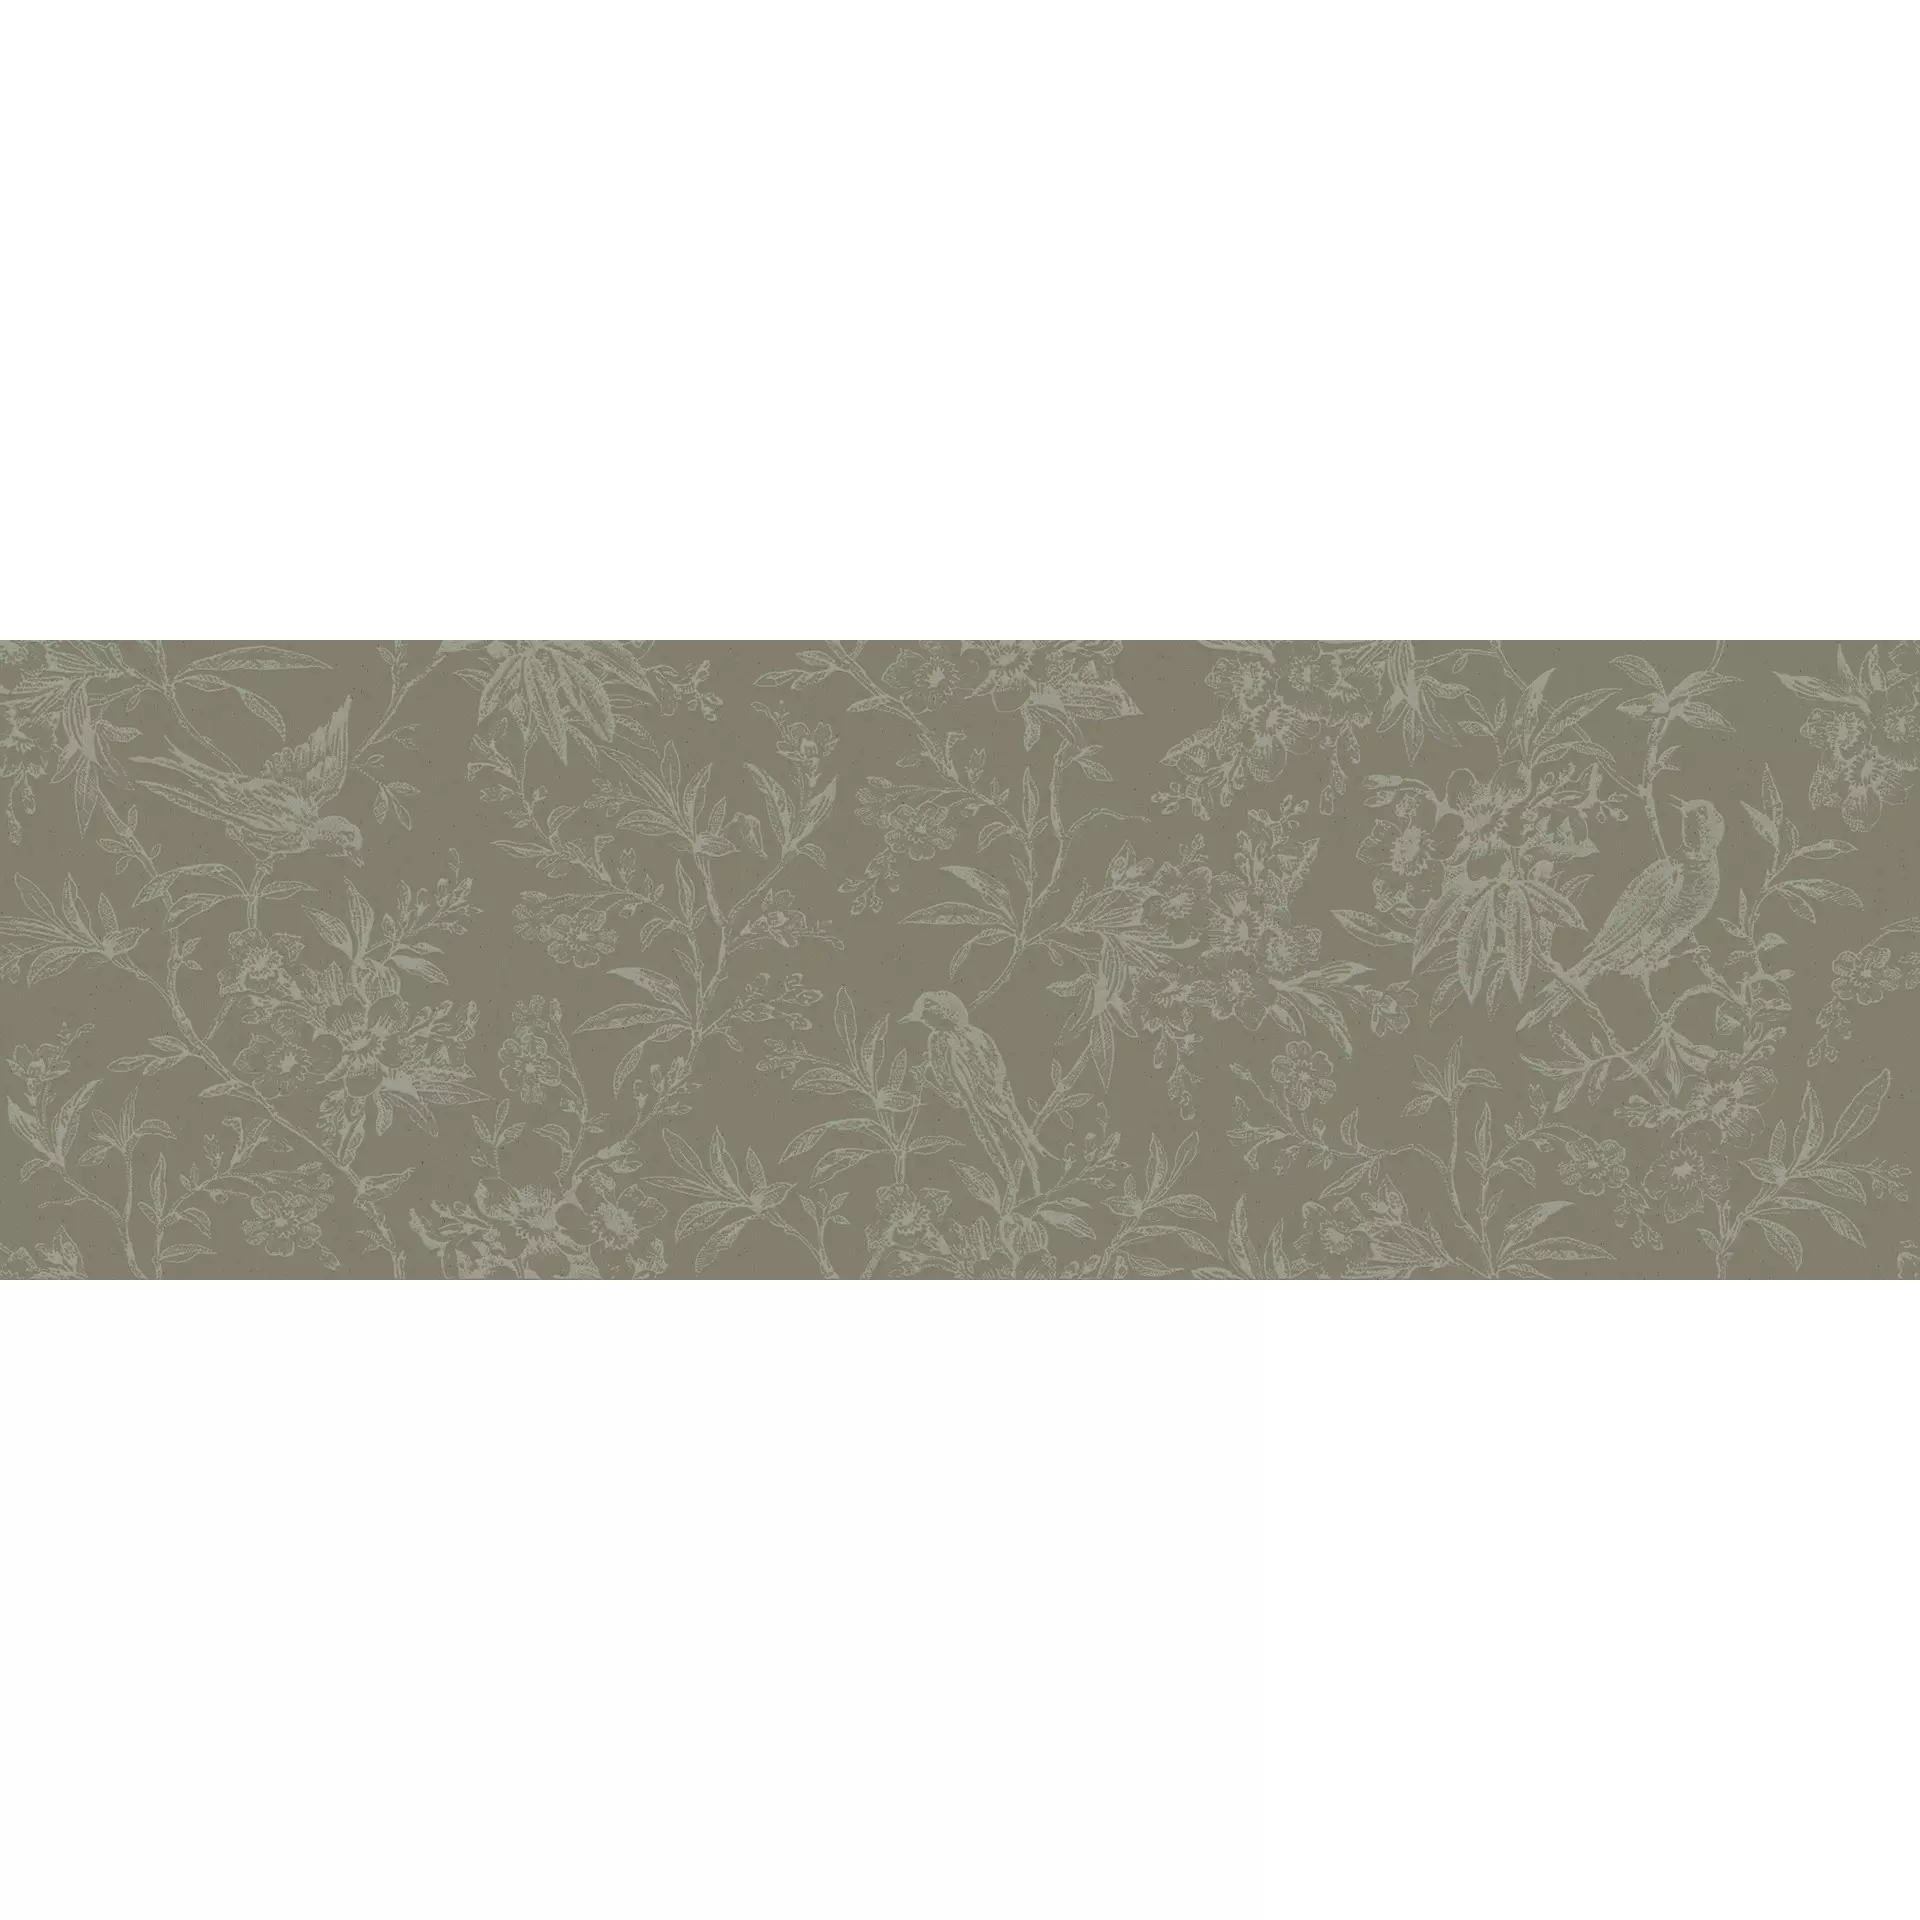 Marazzi Momenti Salvia – Bianco Naturale – Matt Decor China MADK 40x120cm 6mm